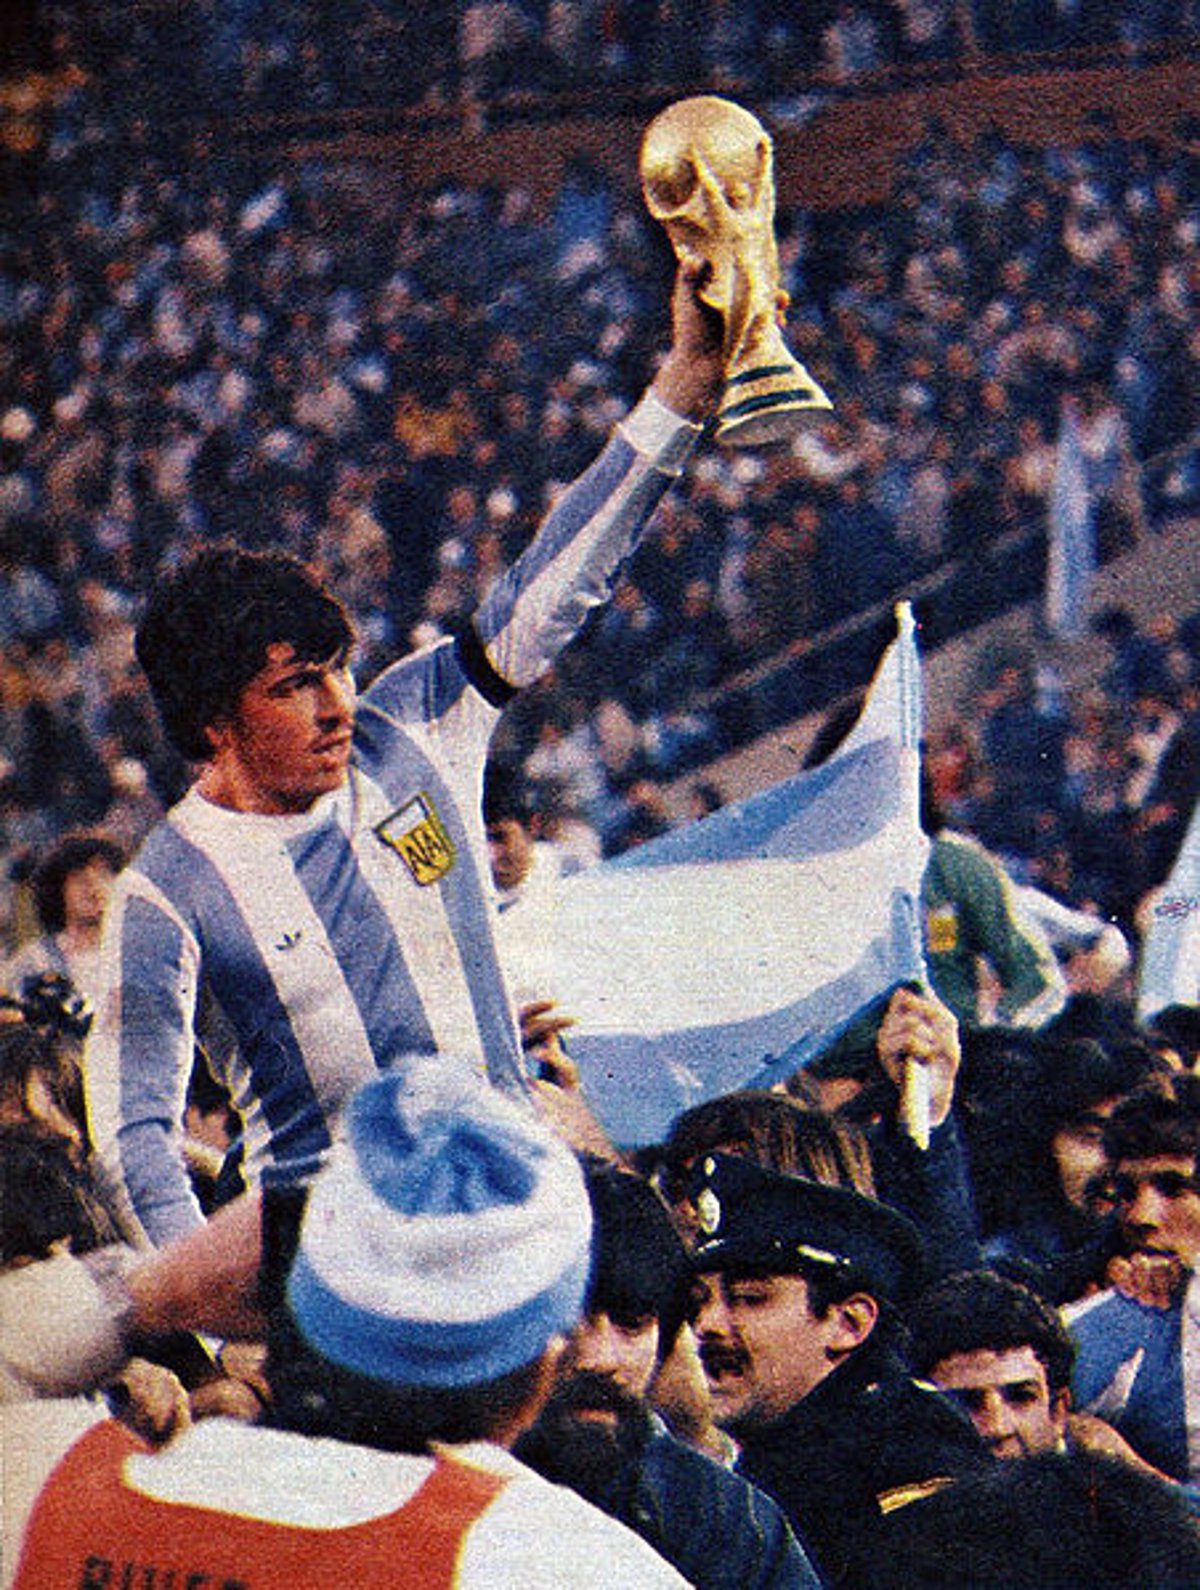 Argentina 78, el fútbol como coartada de la dictadura - The New York Times